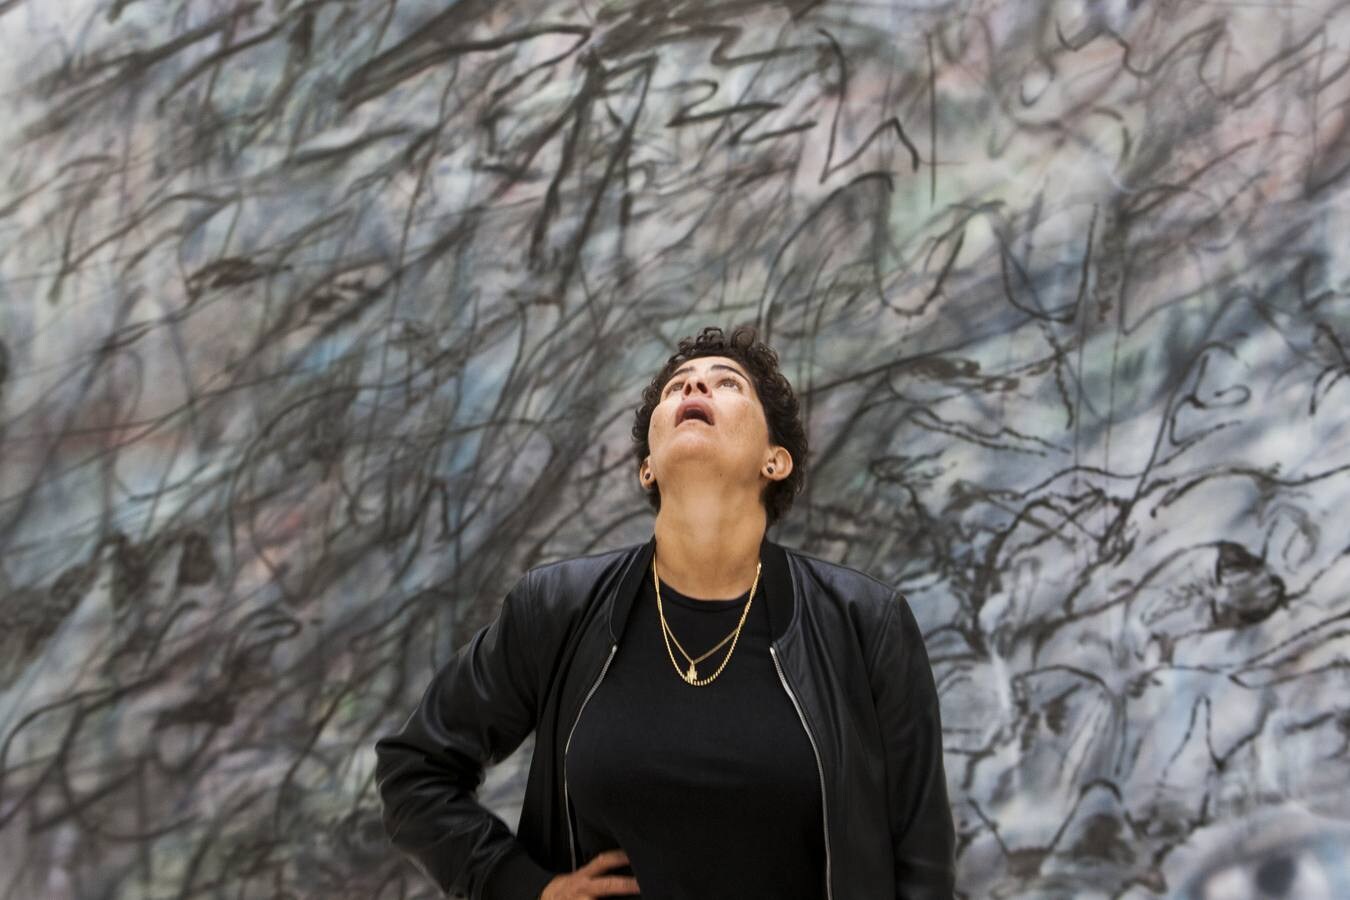 La artista plástica Julie Mehretu enfrentó en el Centro Botín la complejidad y violencia en sus pinturas y dibujos.